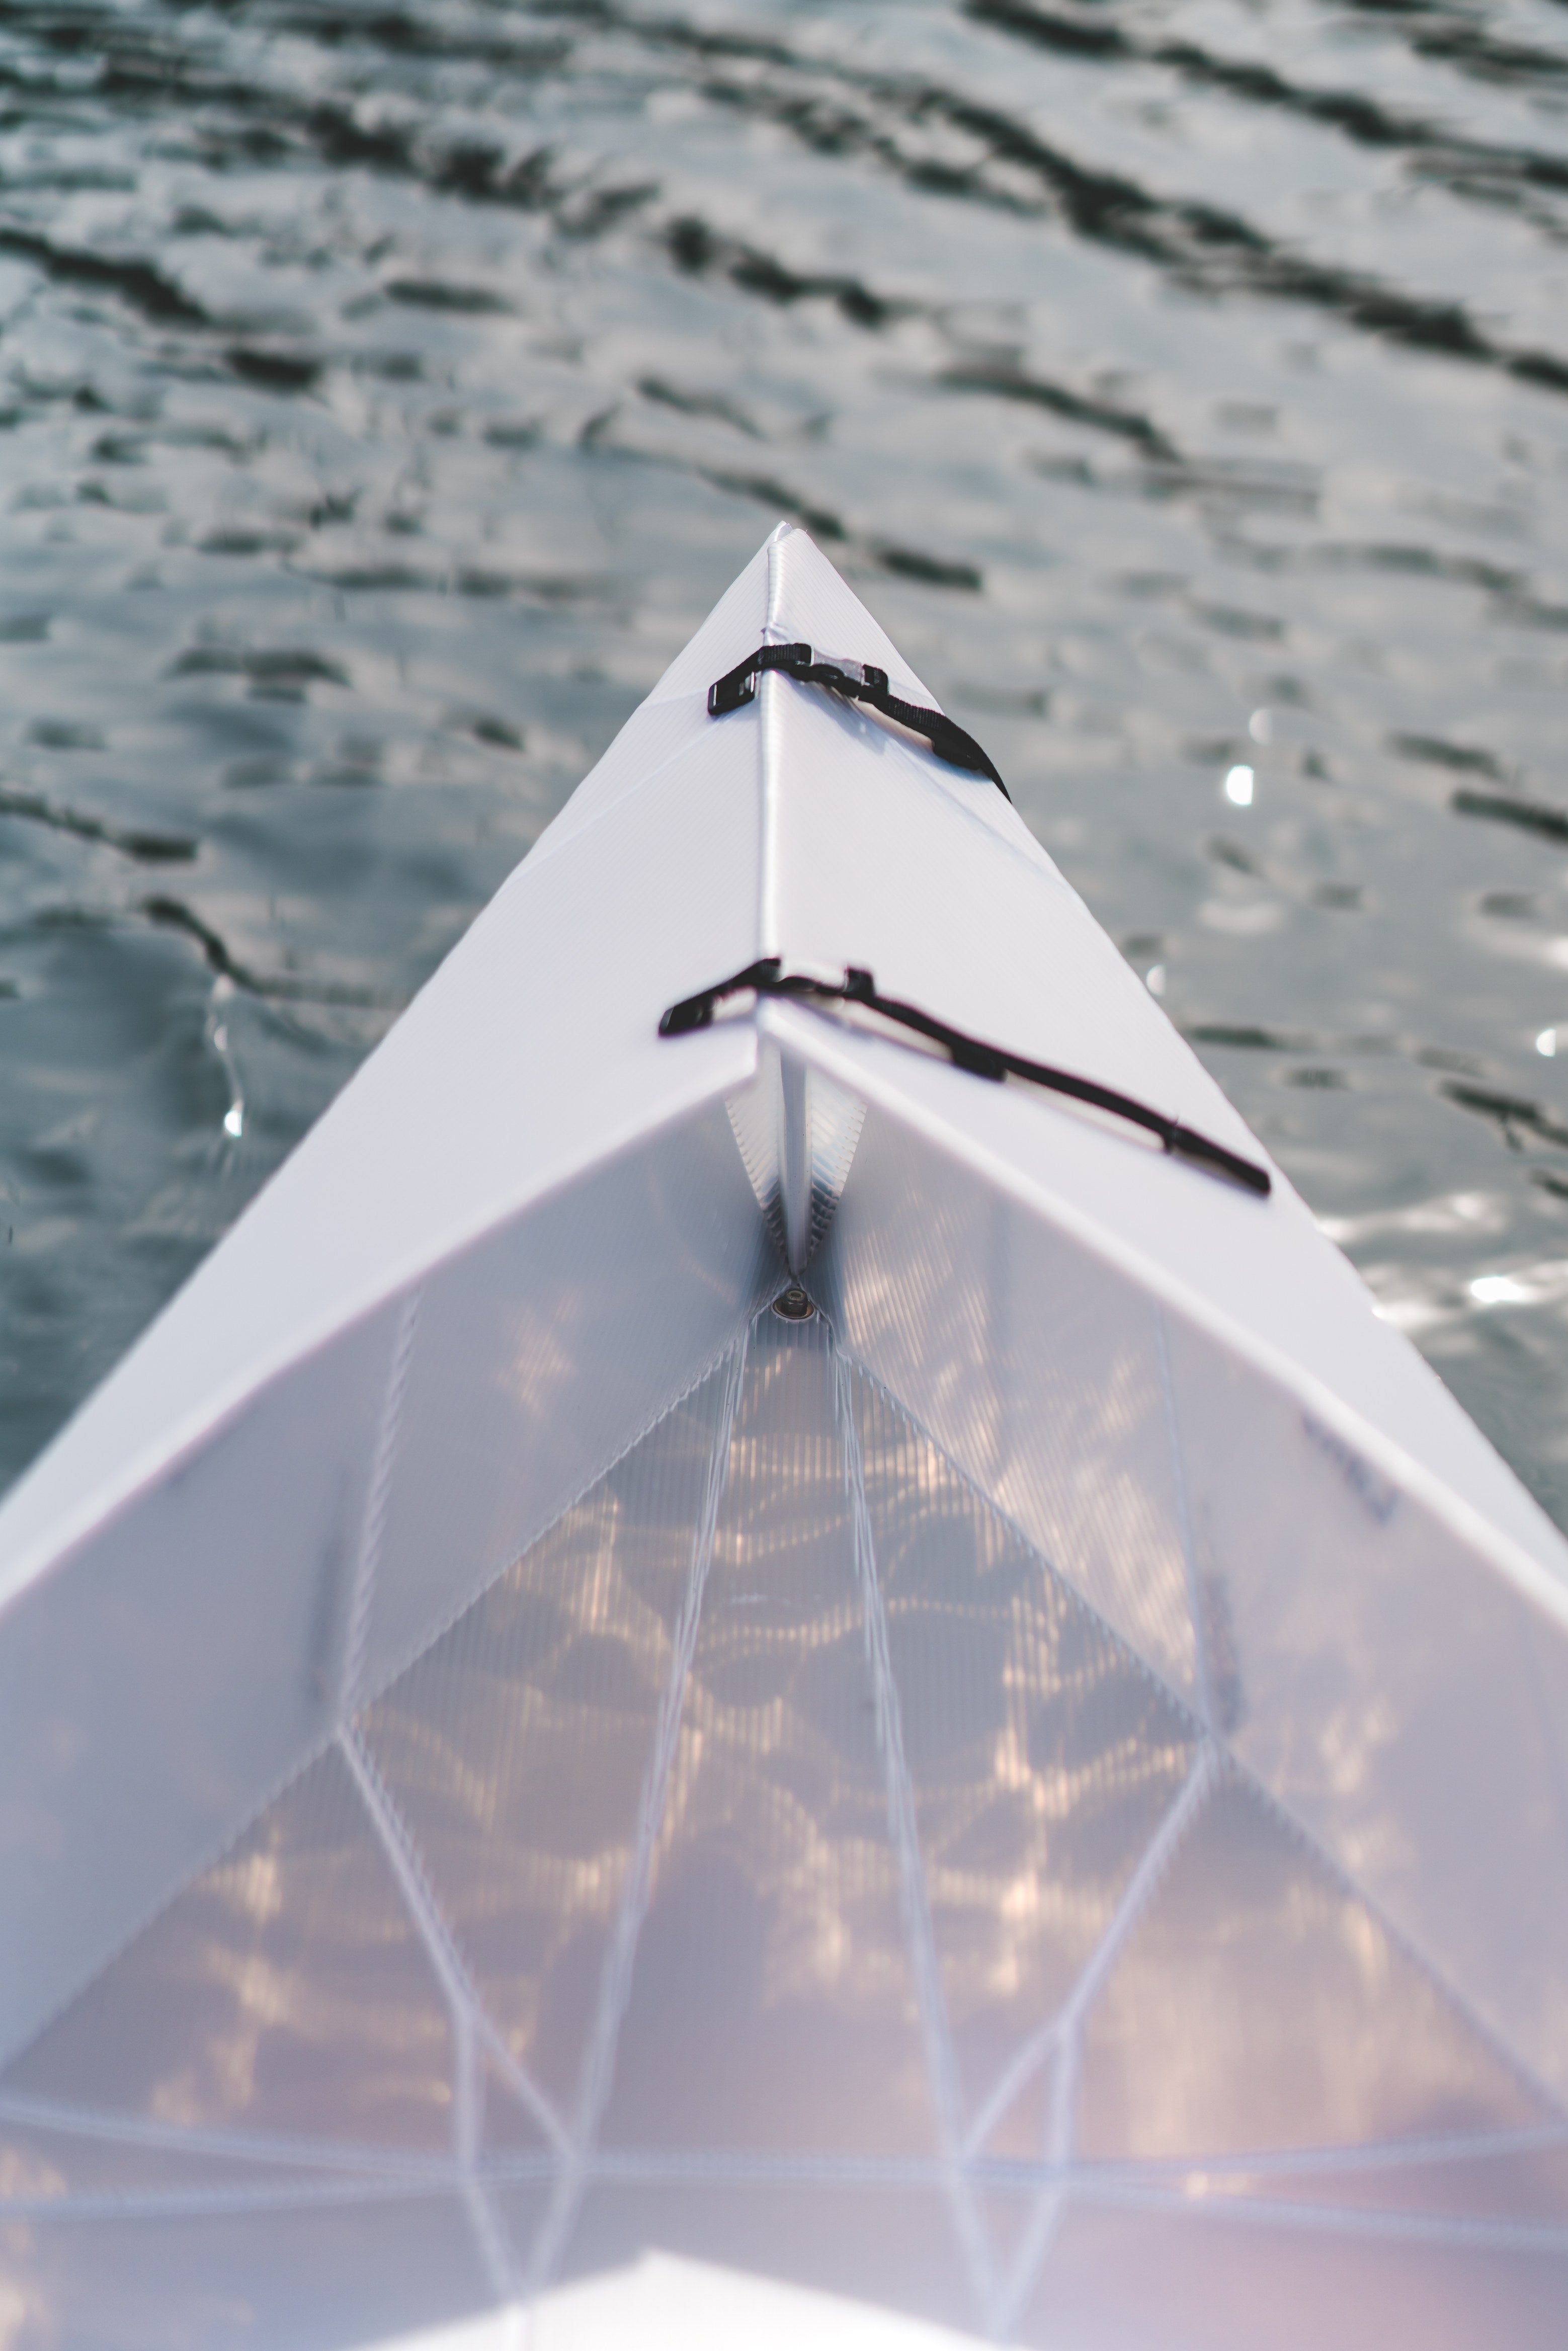 Oru Lake Origami Kayak